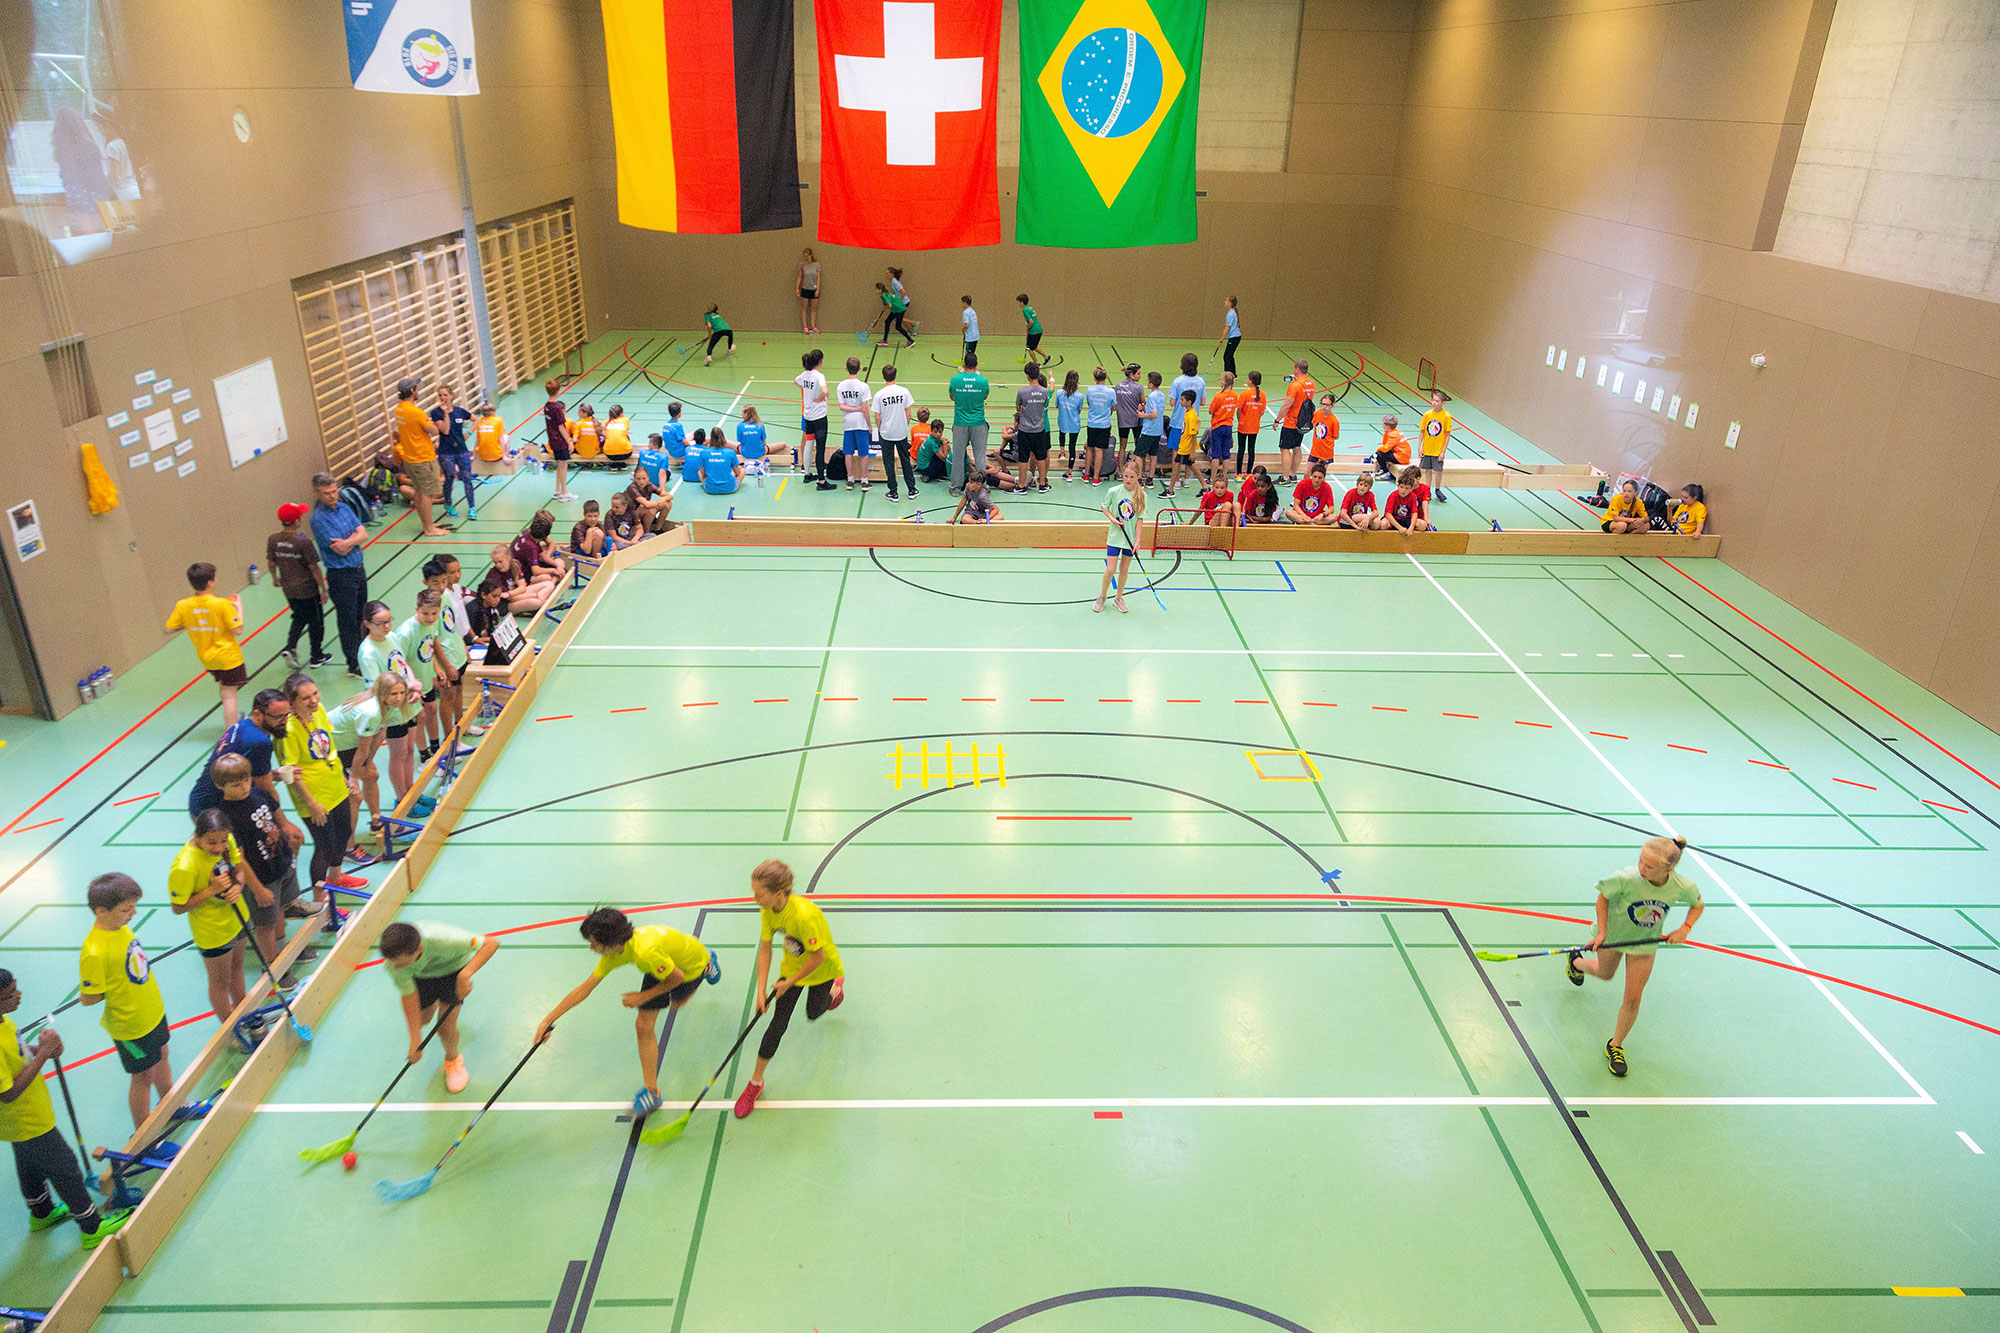 Il torneo di floorball durante la SIS Cup si tiene in una palestra grande della scuola. Sul soffitto sono appese le bandiere di Germania, Brasile e Svizzera.